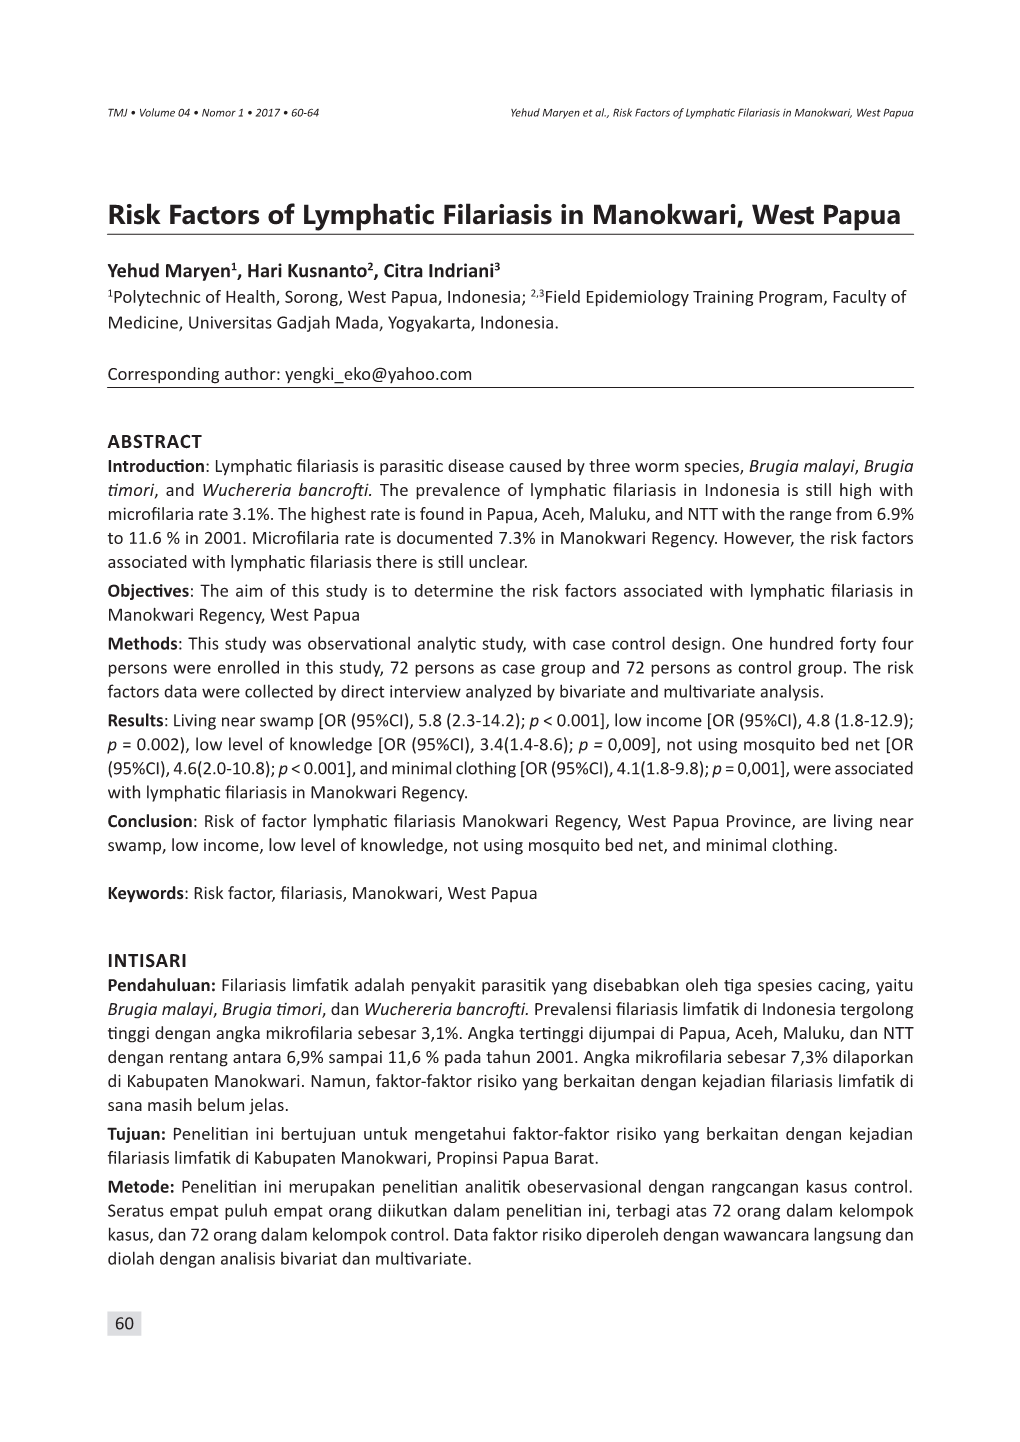 Risk Factors of Lymphatic Filariasis in Manokwari, West Papua